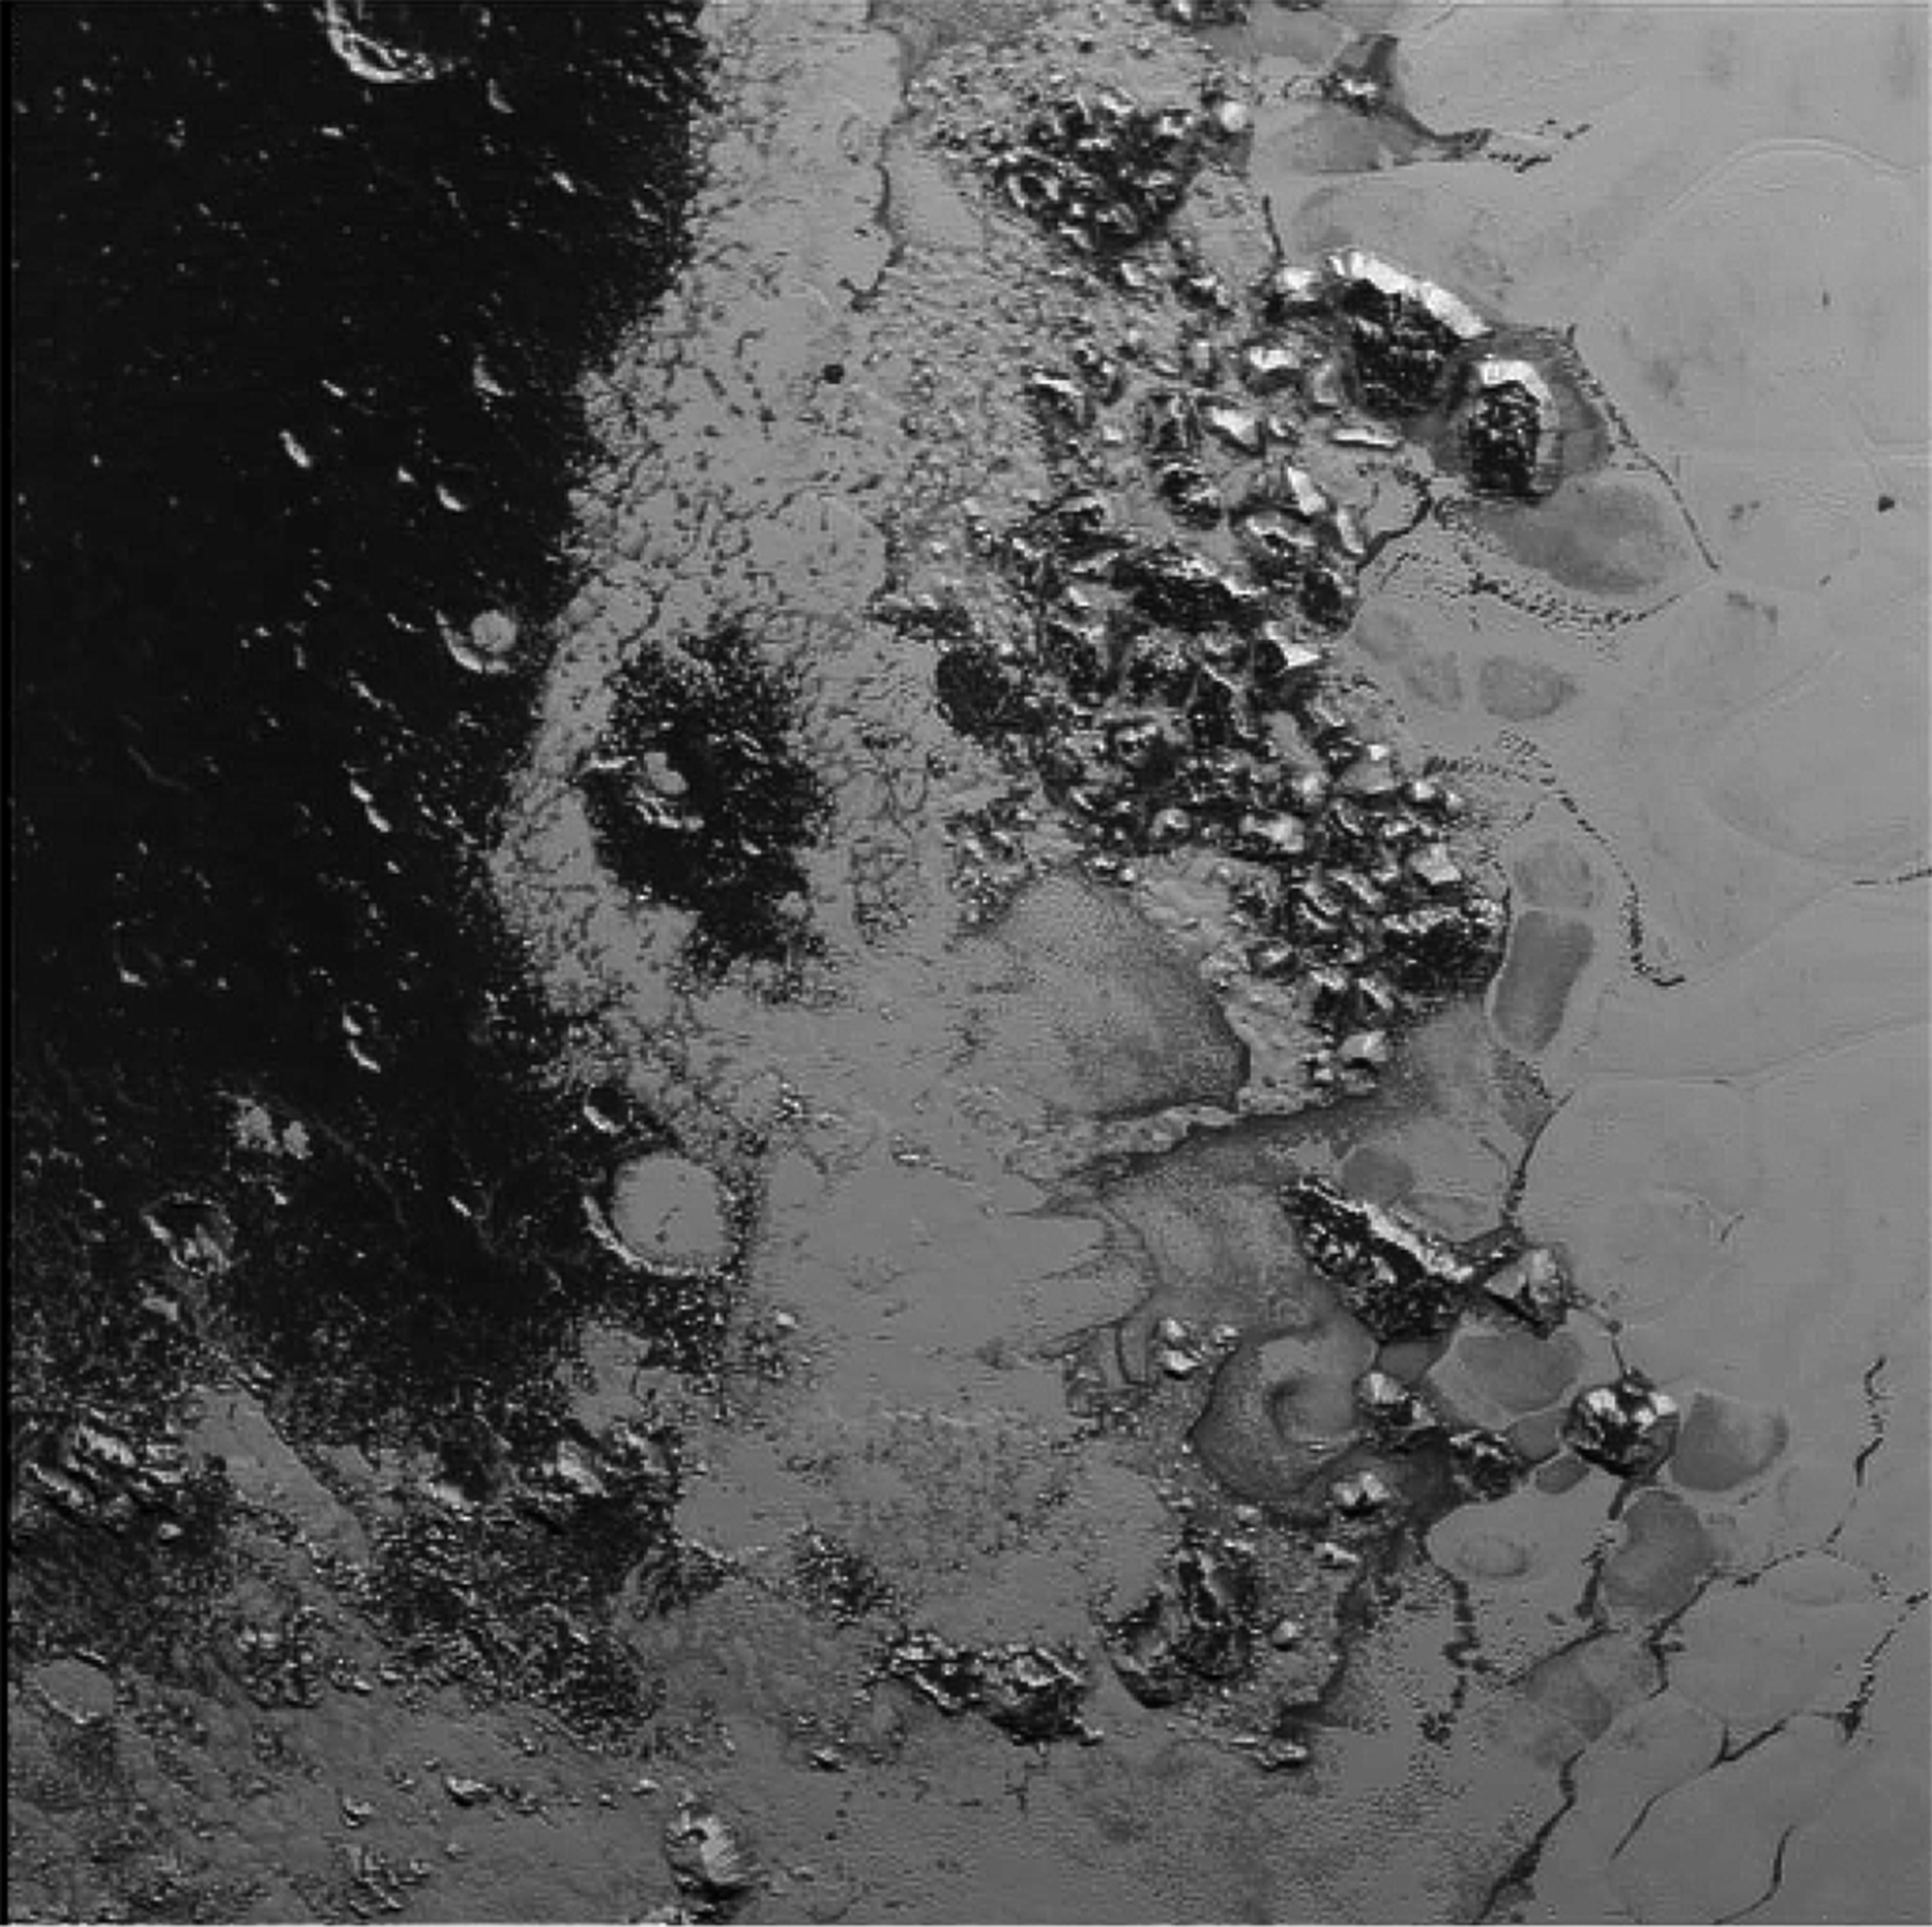 Pluto photos part 2